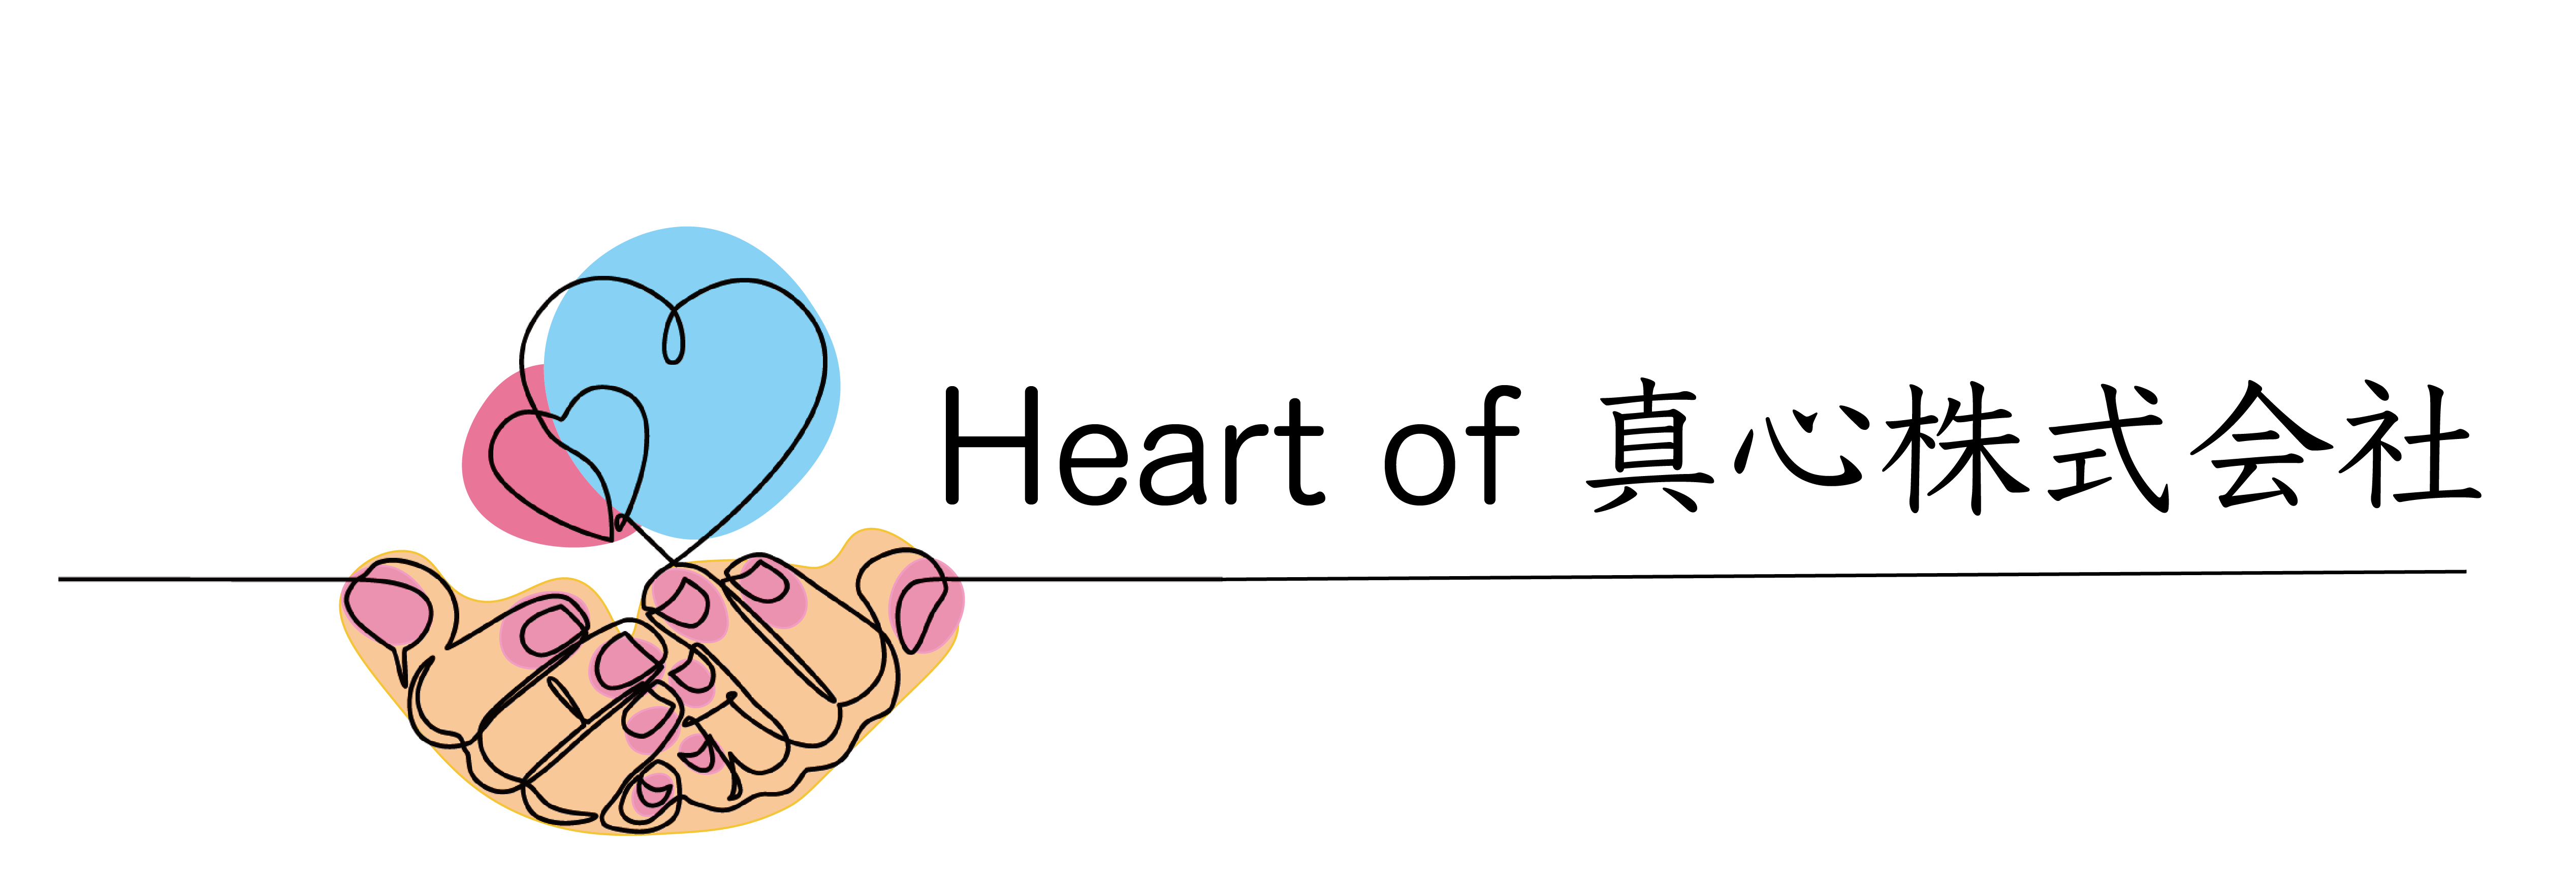 Heart of 真心株式会社ロゴ